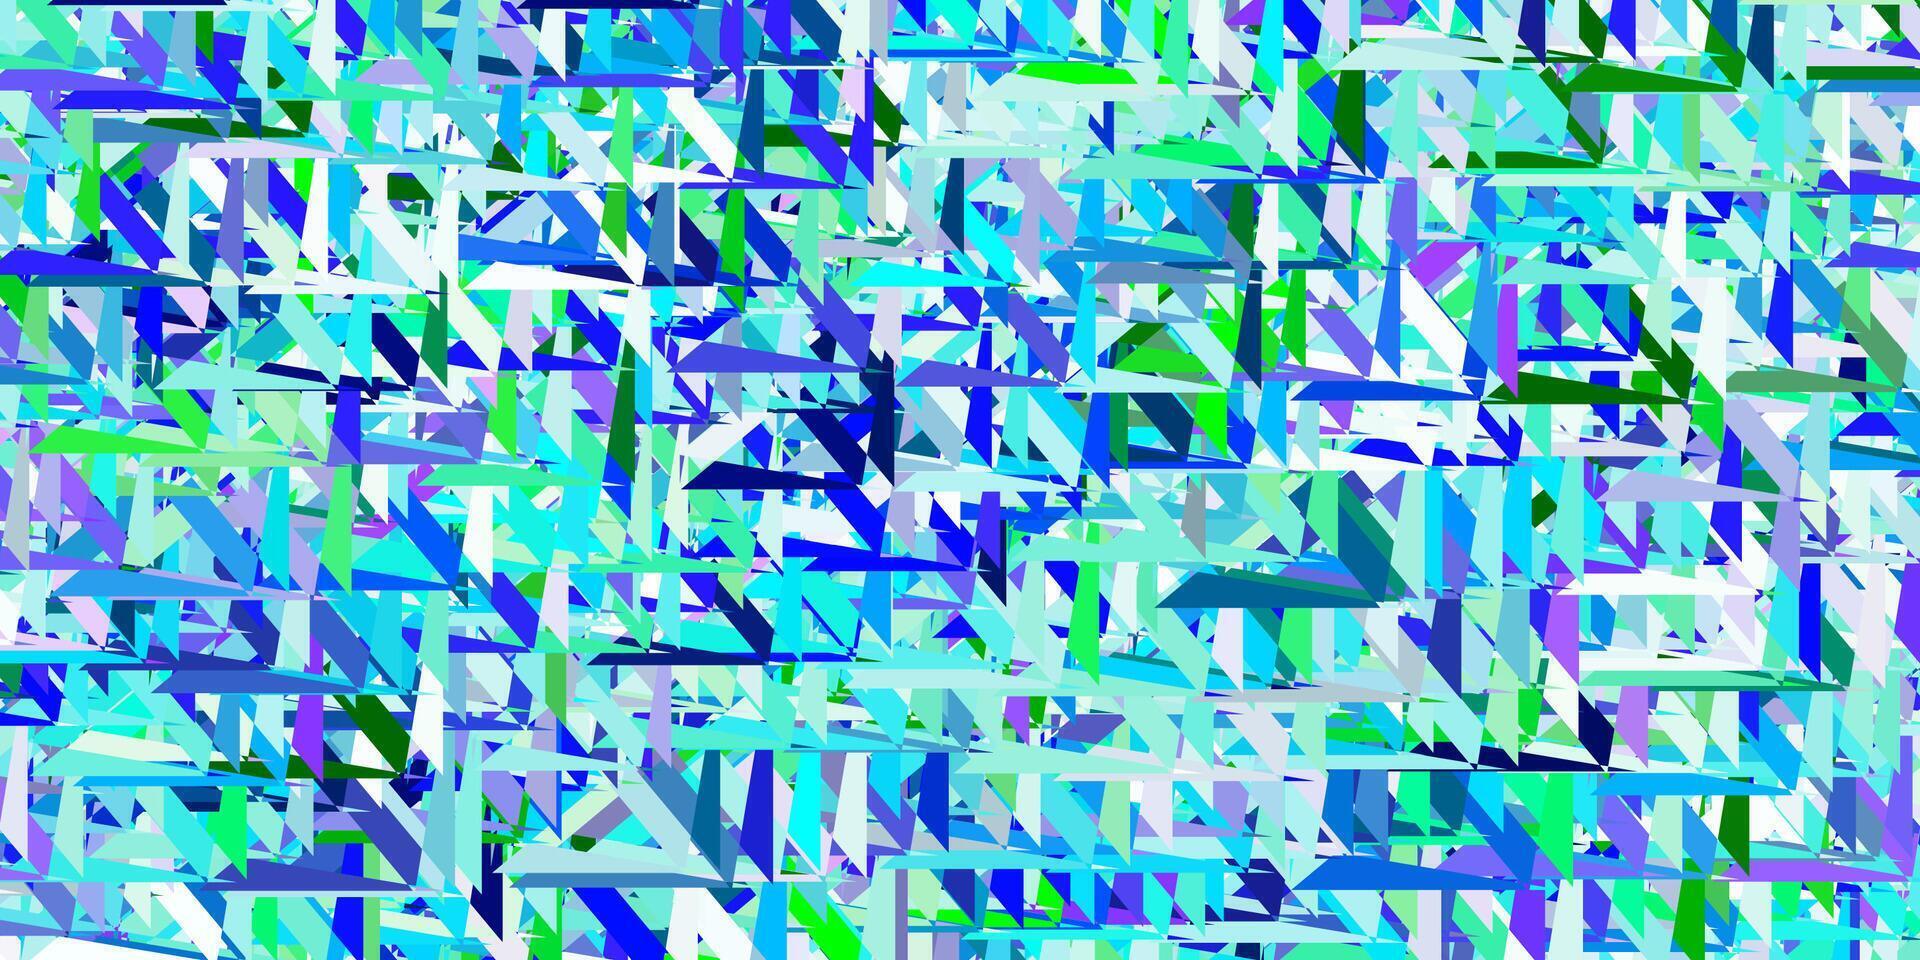 layout de vetor azul claro e verde com formas triangulares.